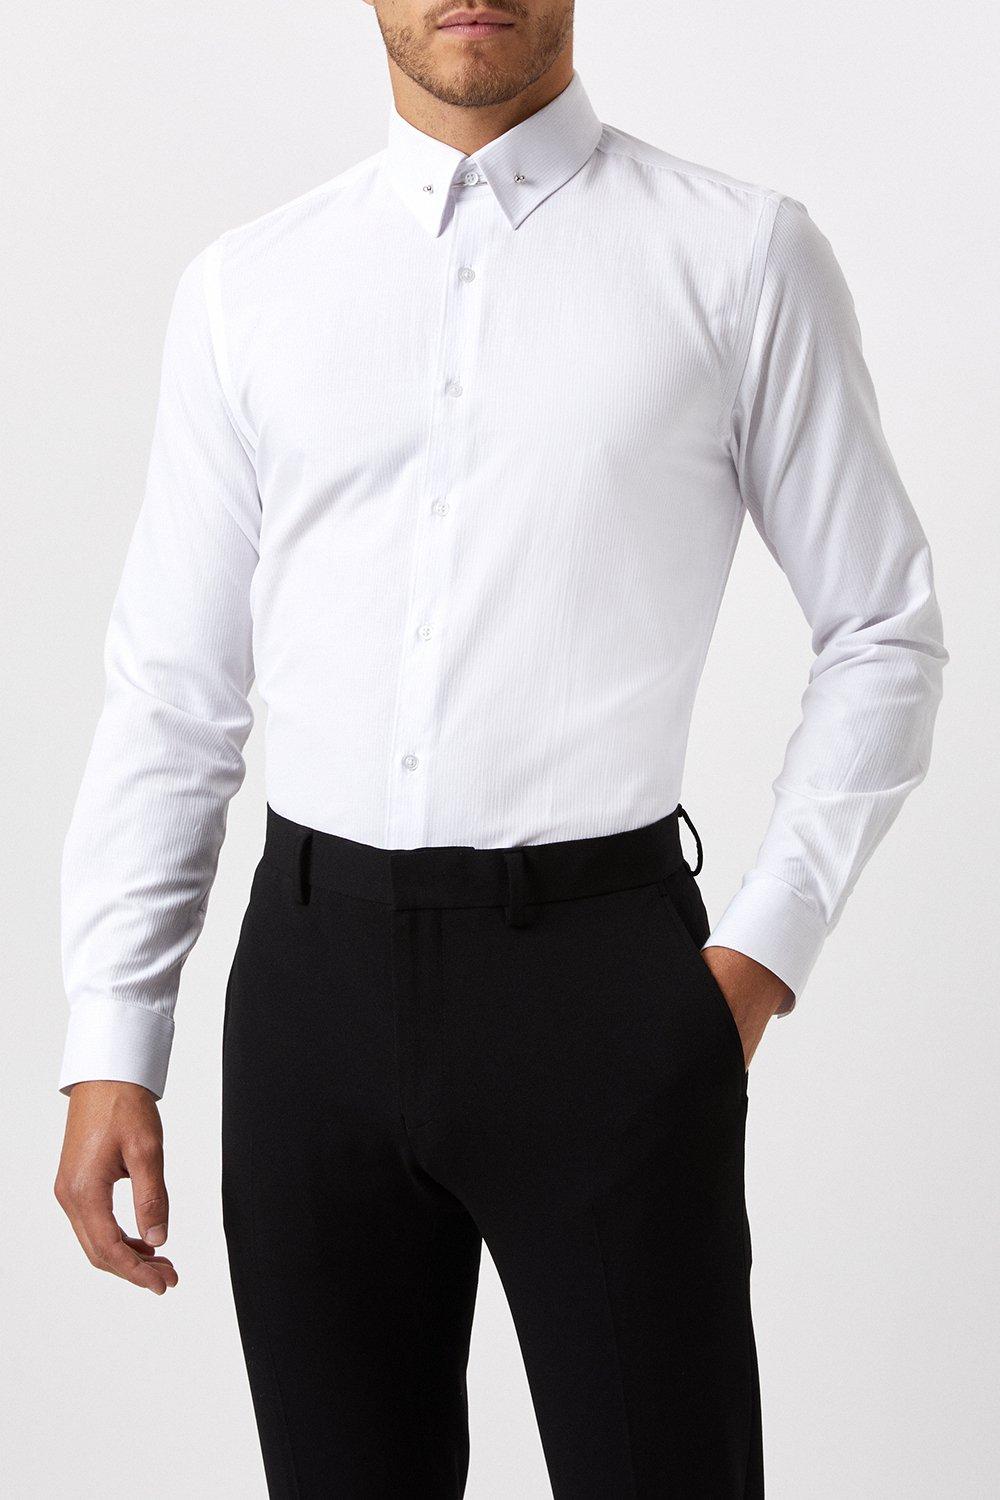 Shirts | Slim Fit White Collar Bar Dress Shirt | Burton